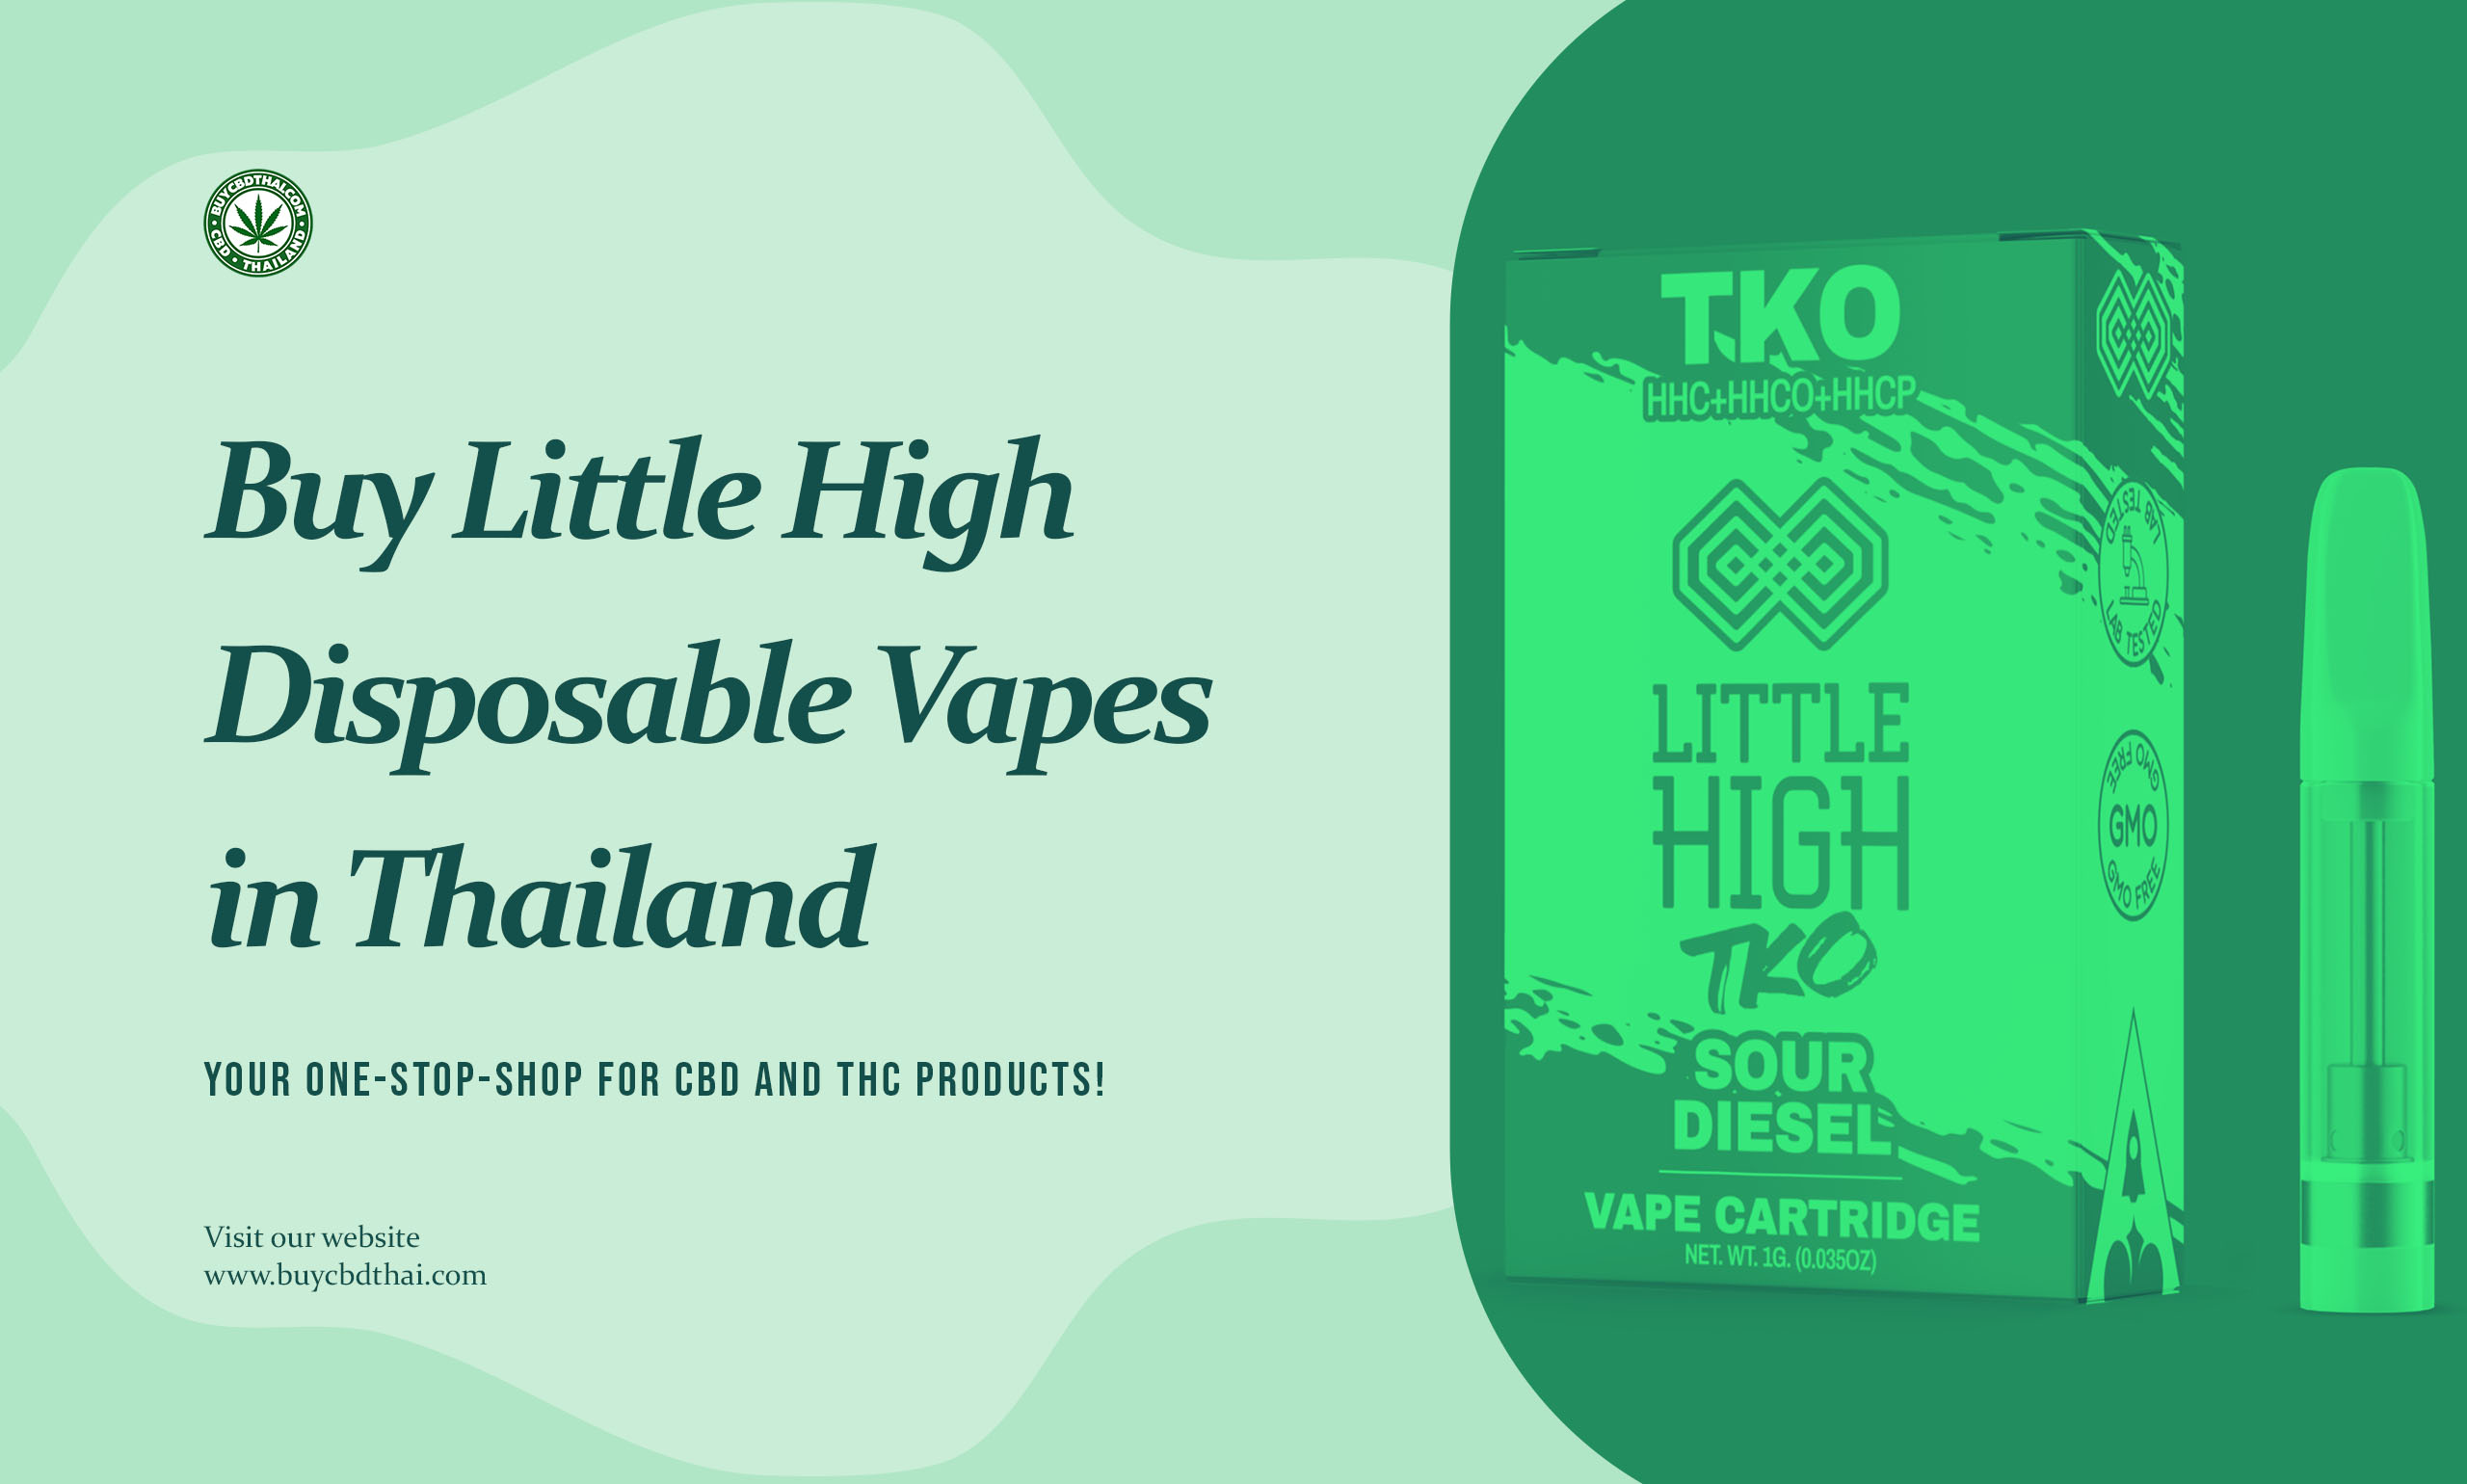 Little High Vapes Thailand